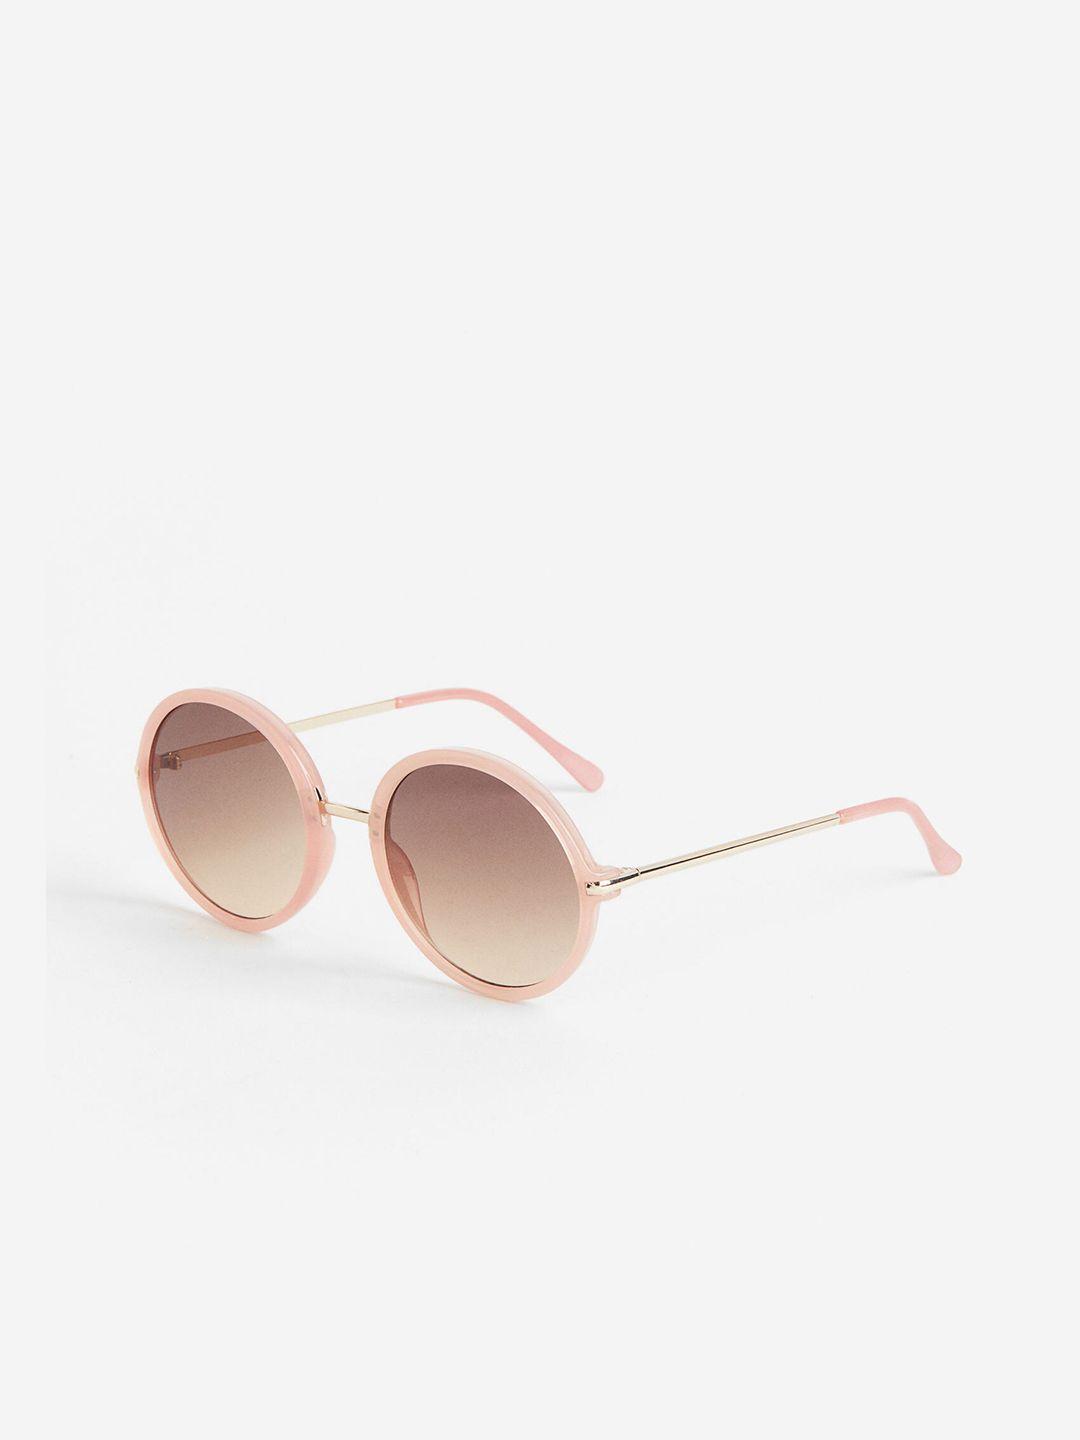 h&m-women-round-sunglasses